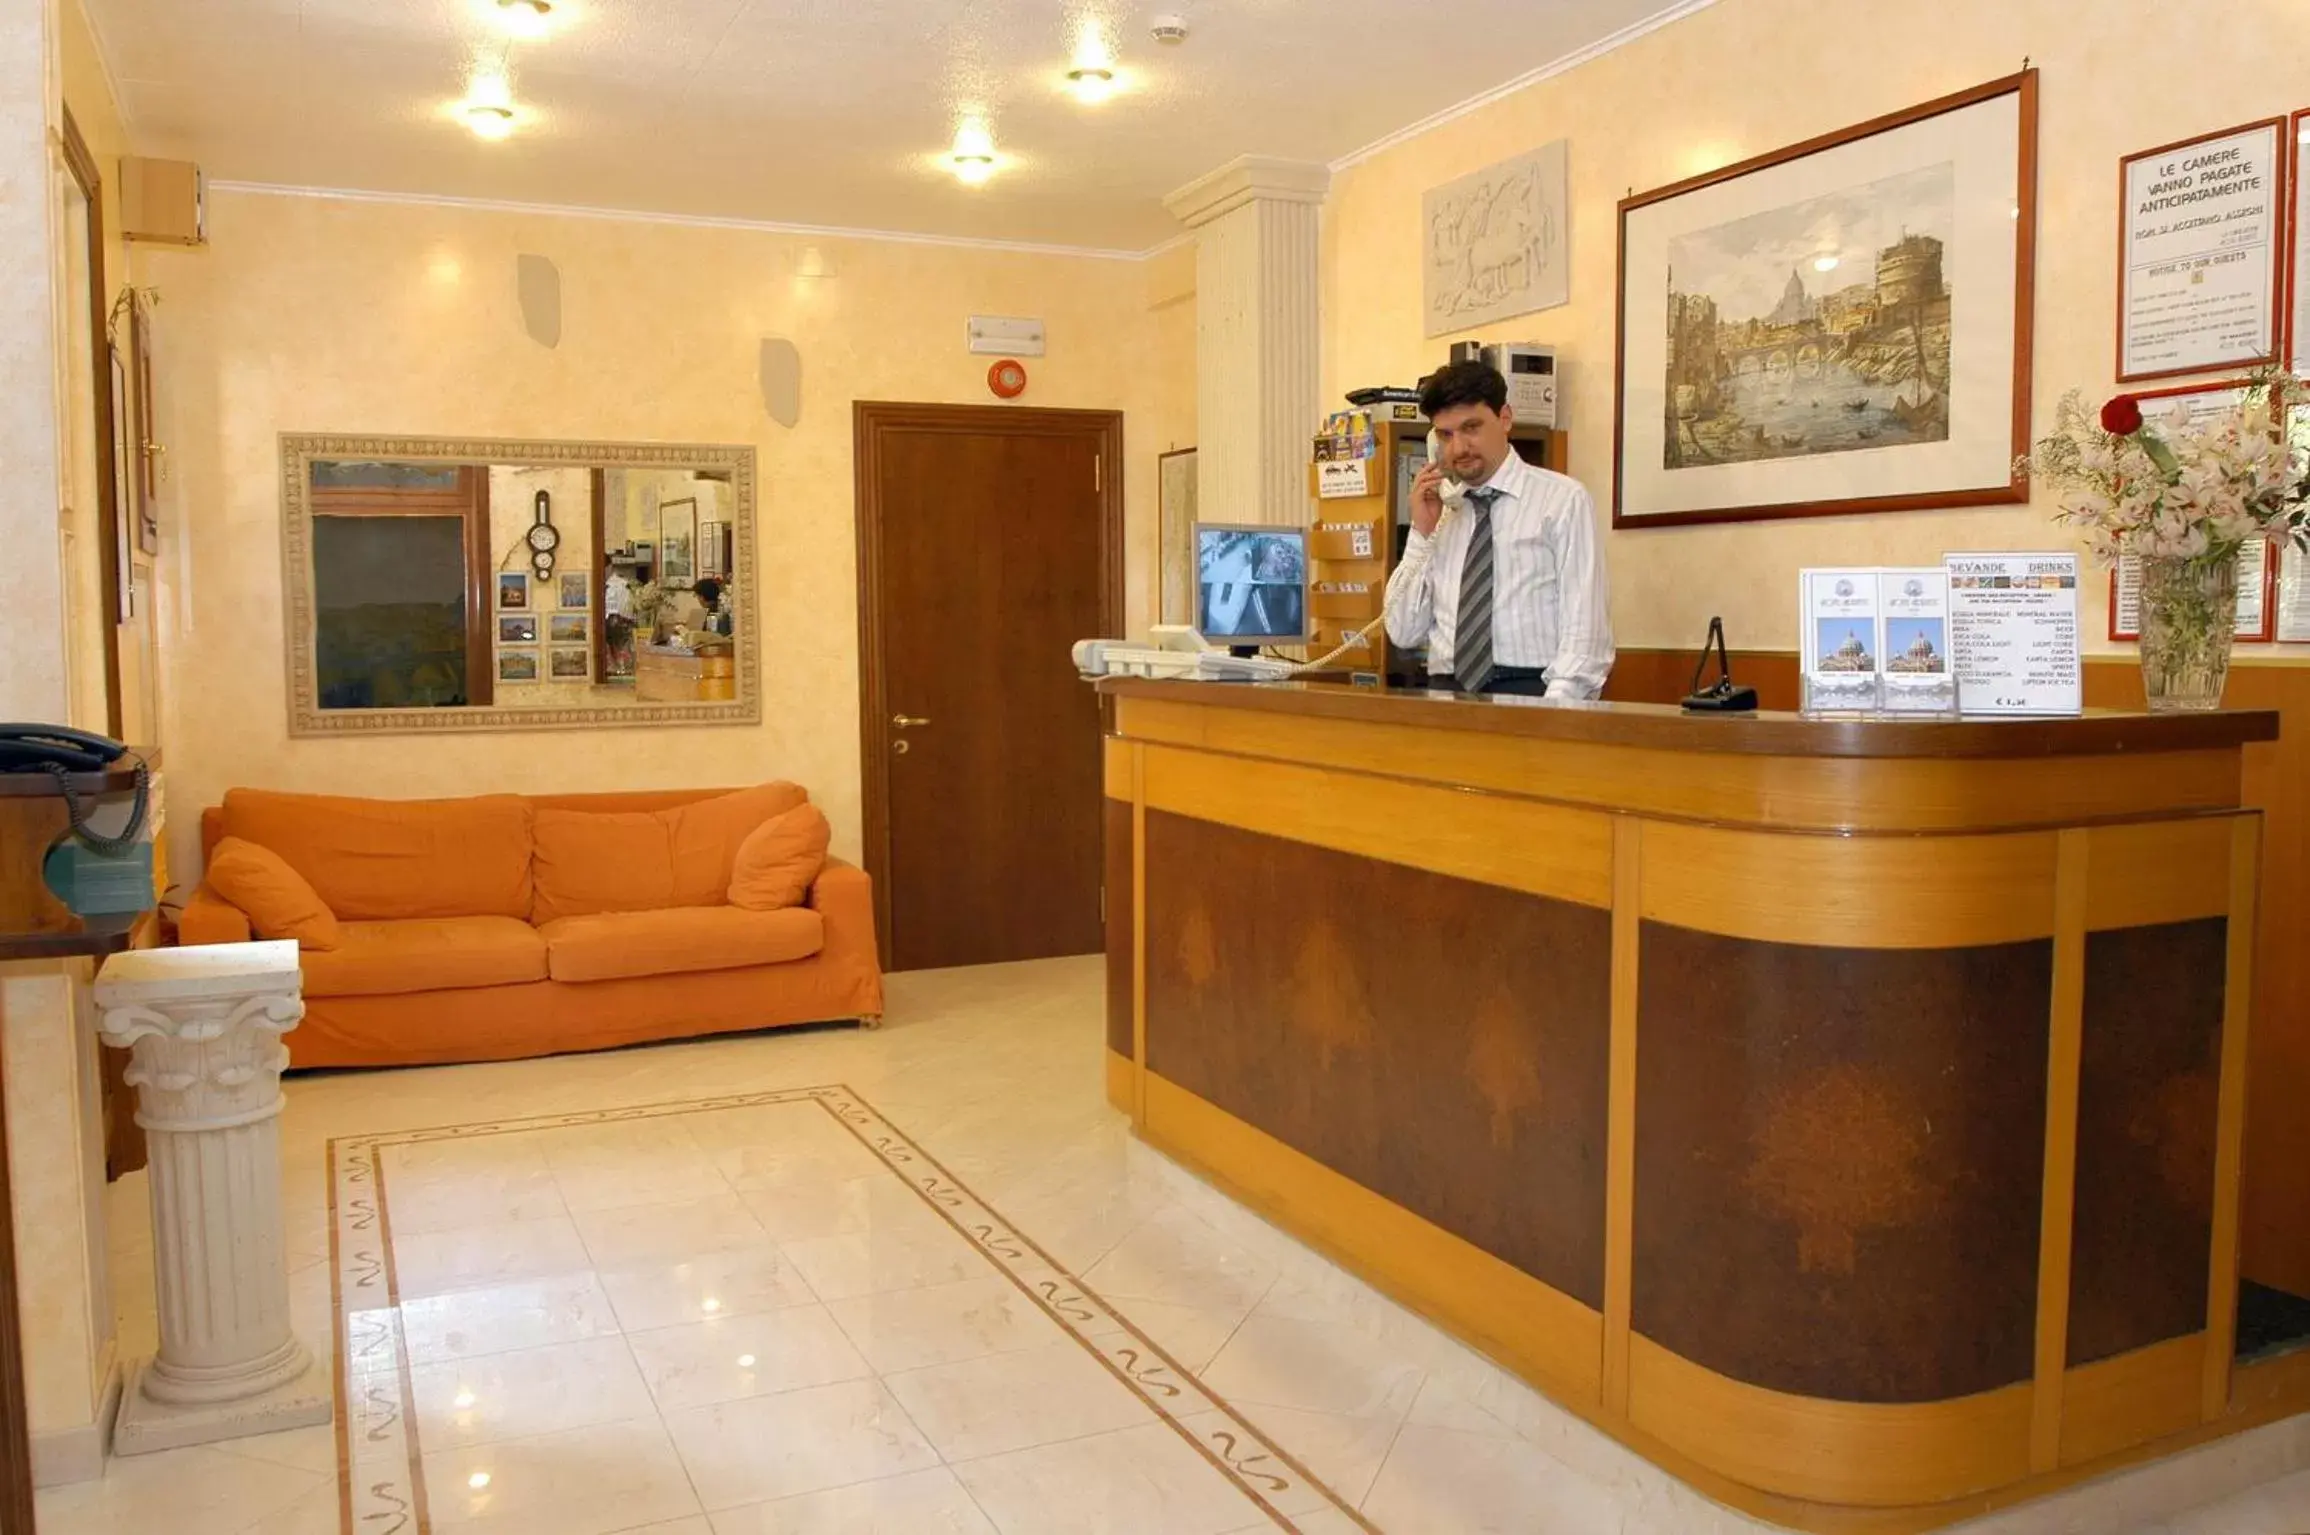 Lobby or reception, Lobby/Reception in Hotel Adriatic